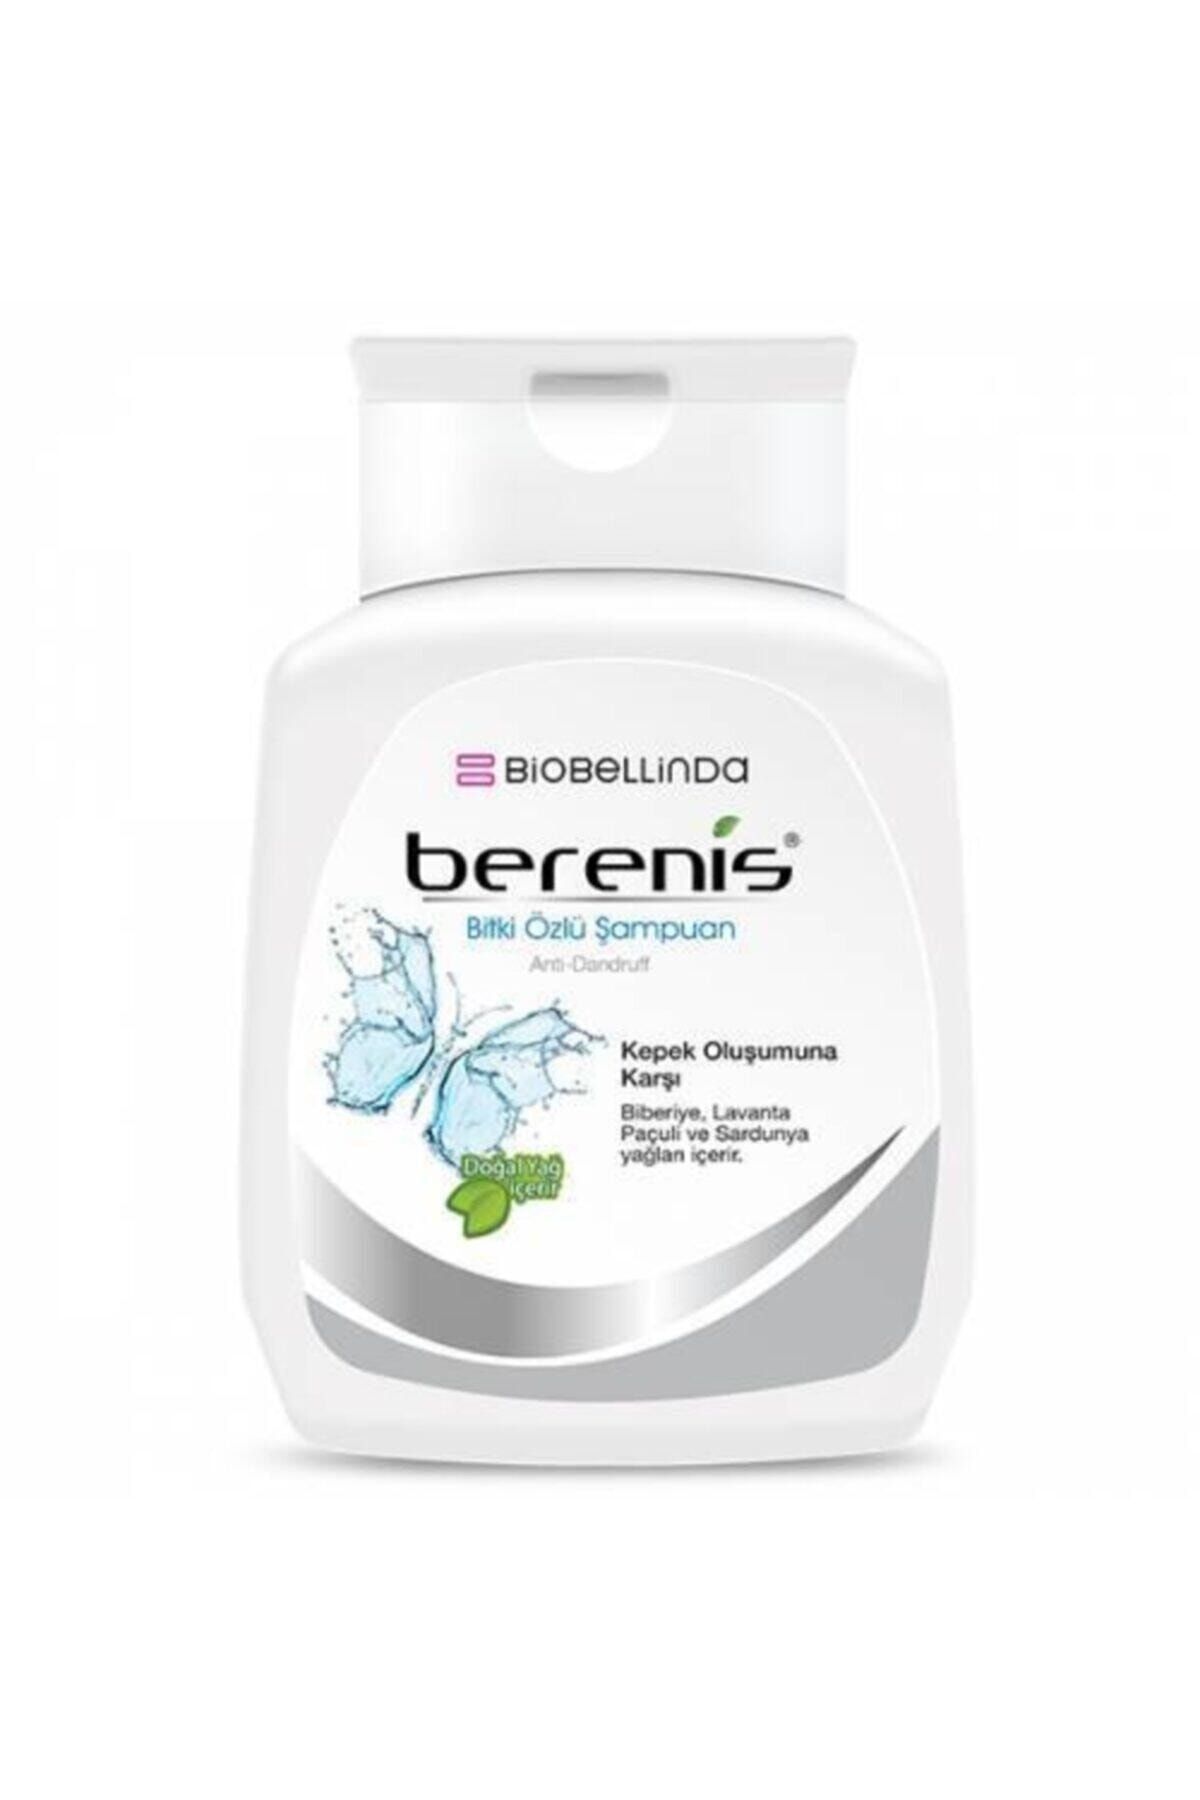 BioBellinda Bionellinda Berenis Bitkisel Özlü Şampuan (kepek Oluşumuna Karşı)